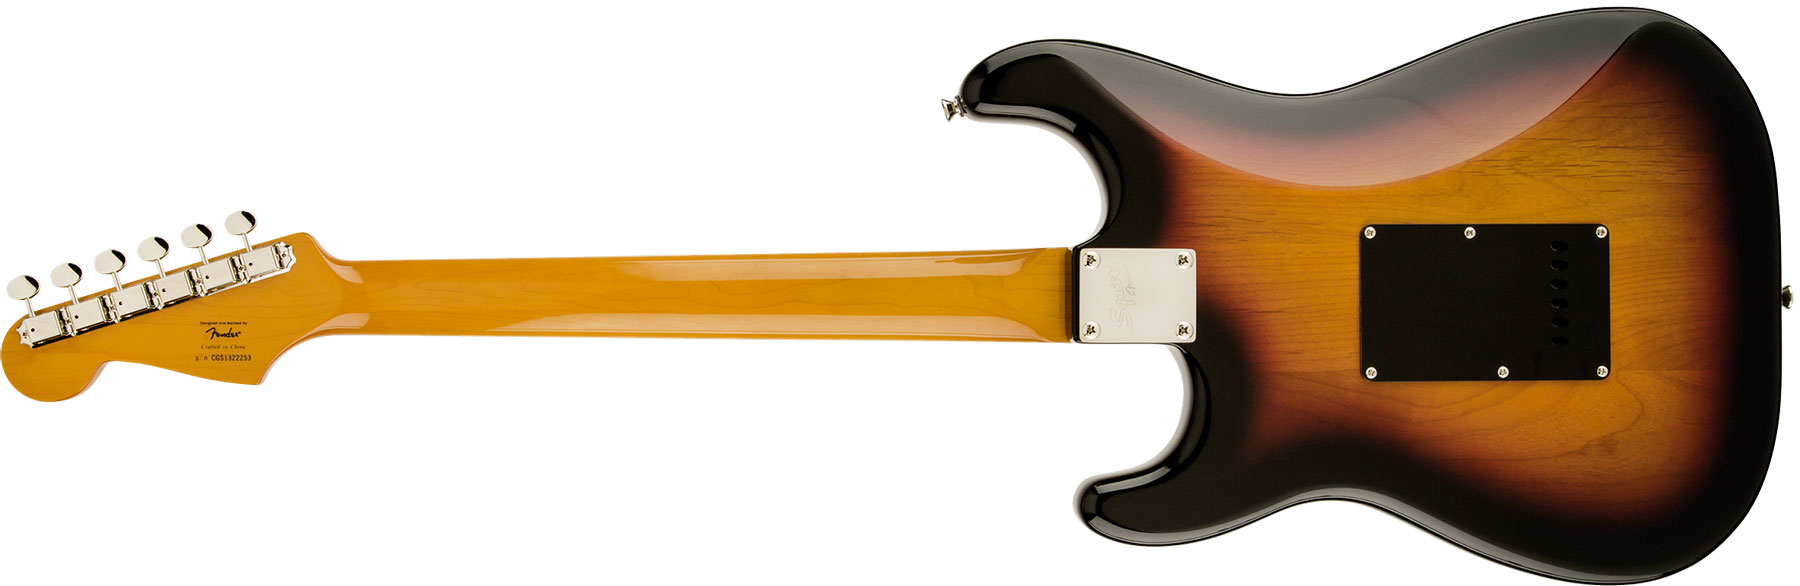 Squier Stratocaster Classic Vibe '60s Sss Lau - 3-color Sunburst - Str shape electric guitar - Variation 1